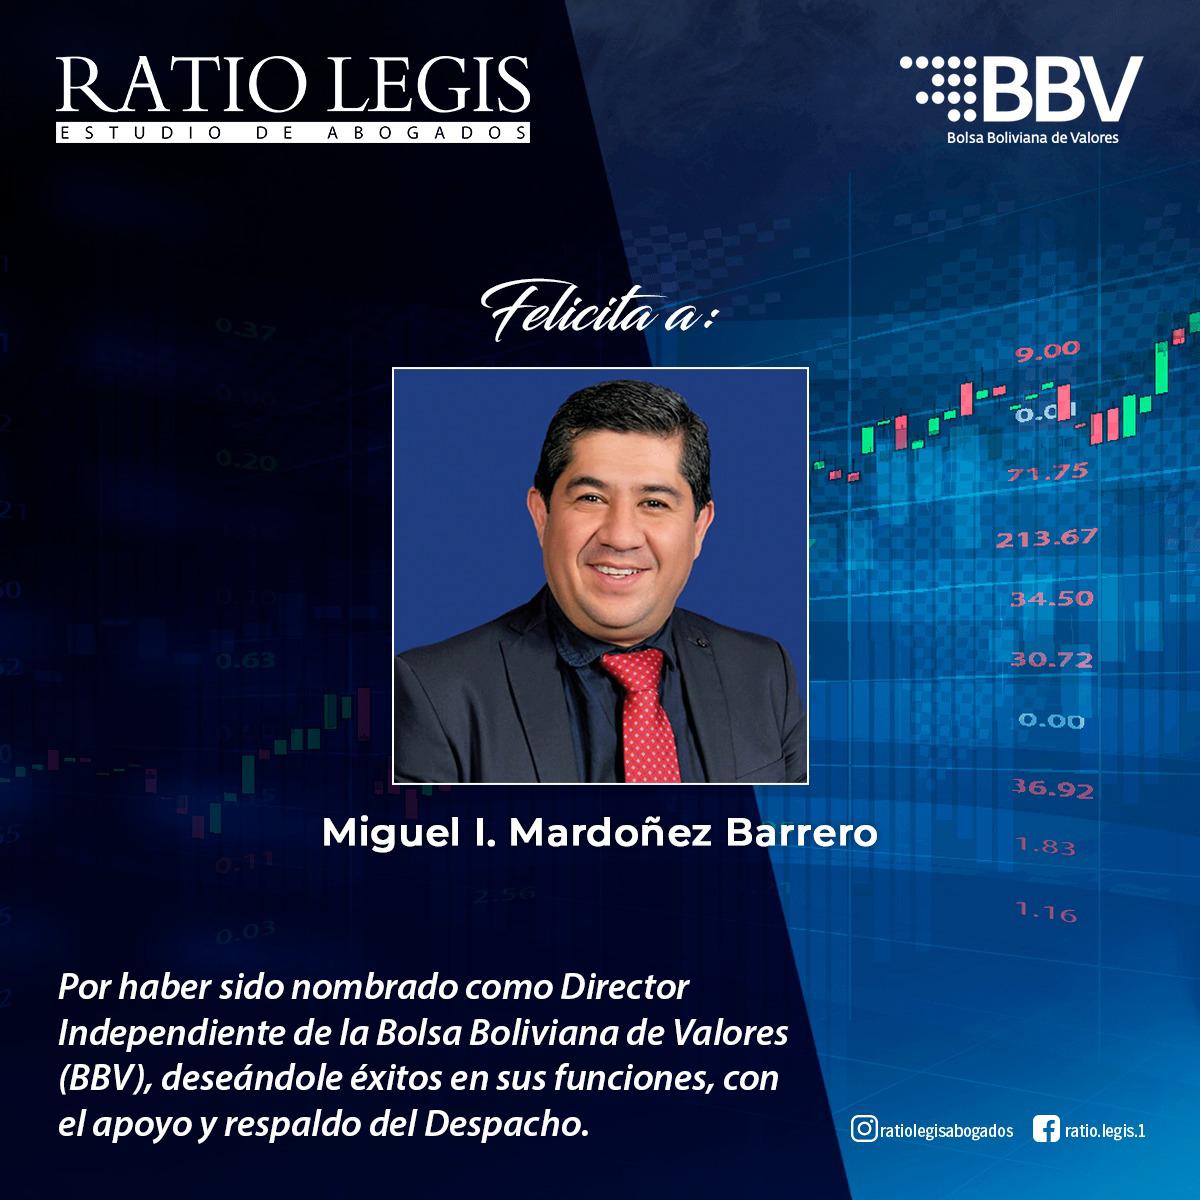 BBV Felicita a Miguel I. Mardoñez Barrero por haber sido nombrado como director independiente de la Bolsa Boliviana de Valores (BBV)